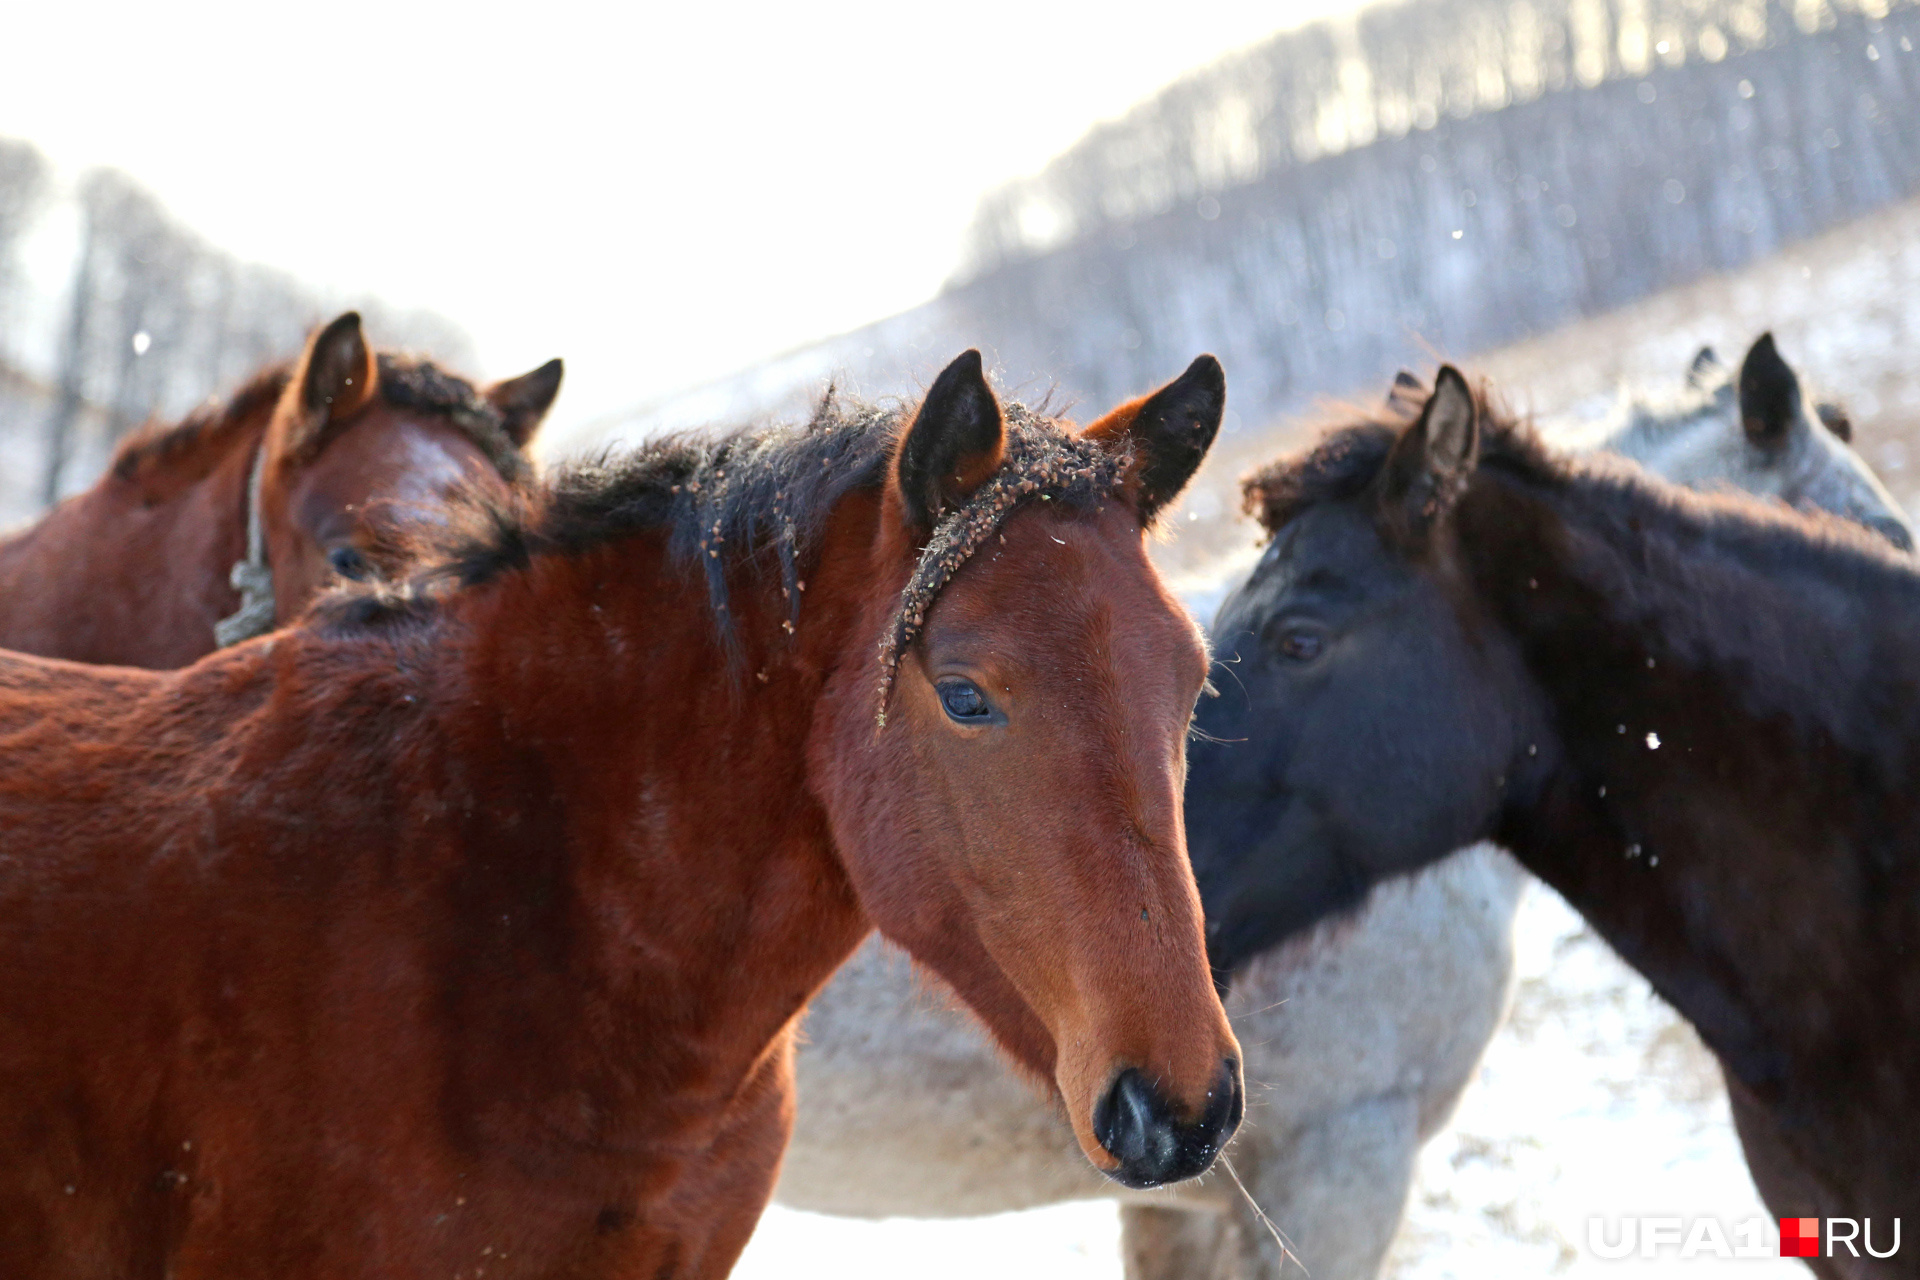 Конезаводчики уверяют, что чёрные лошади наиболее быстры и выносливы, а рыжие имеют очень нестабильный характер